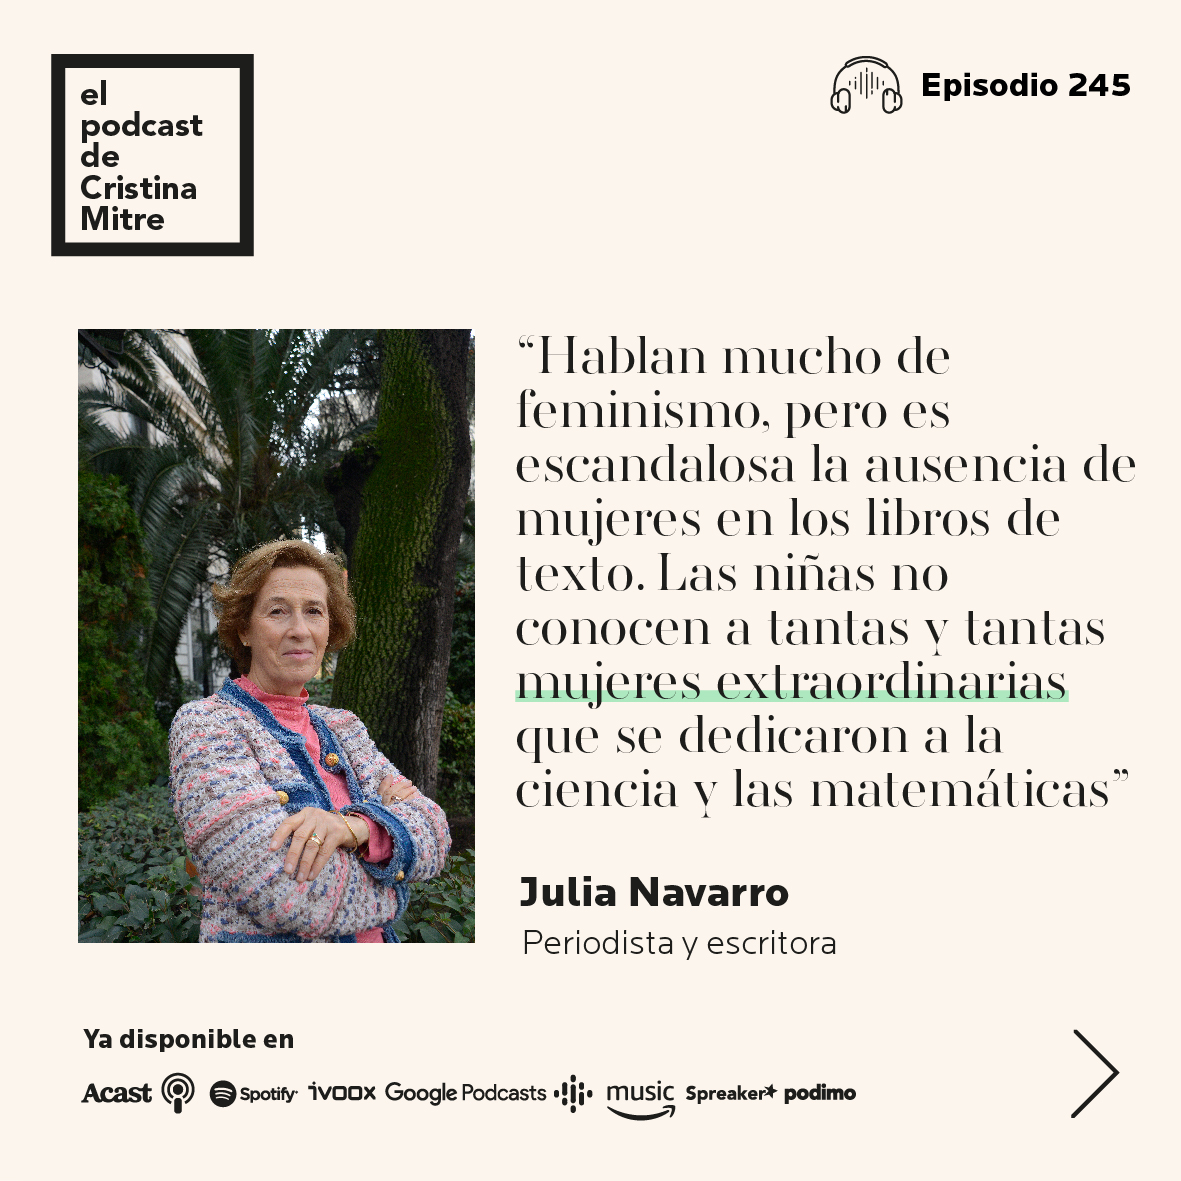 el podcast de cristina mitre julia navarro feminismo